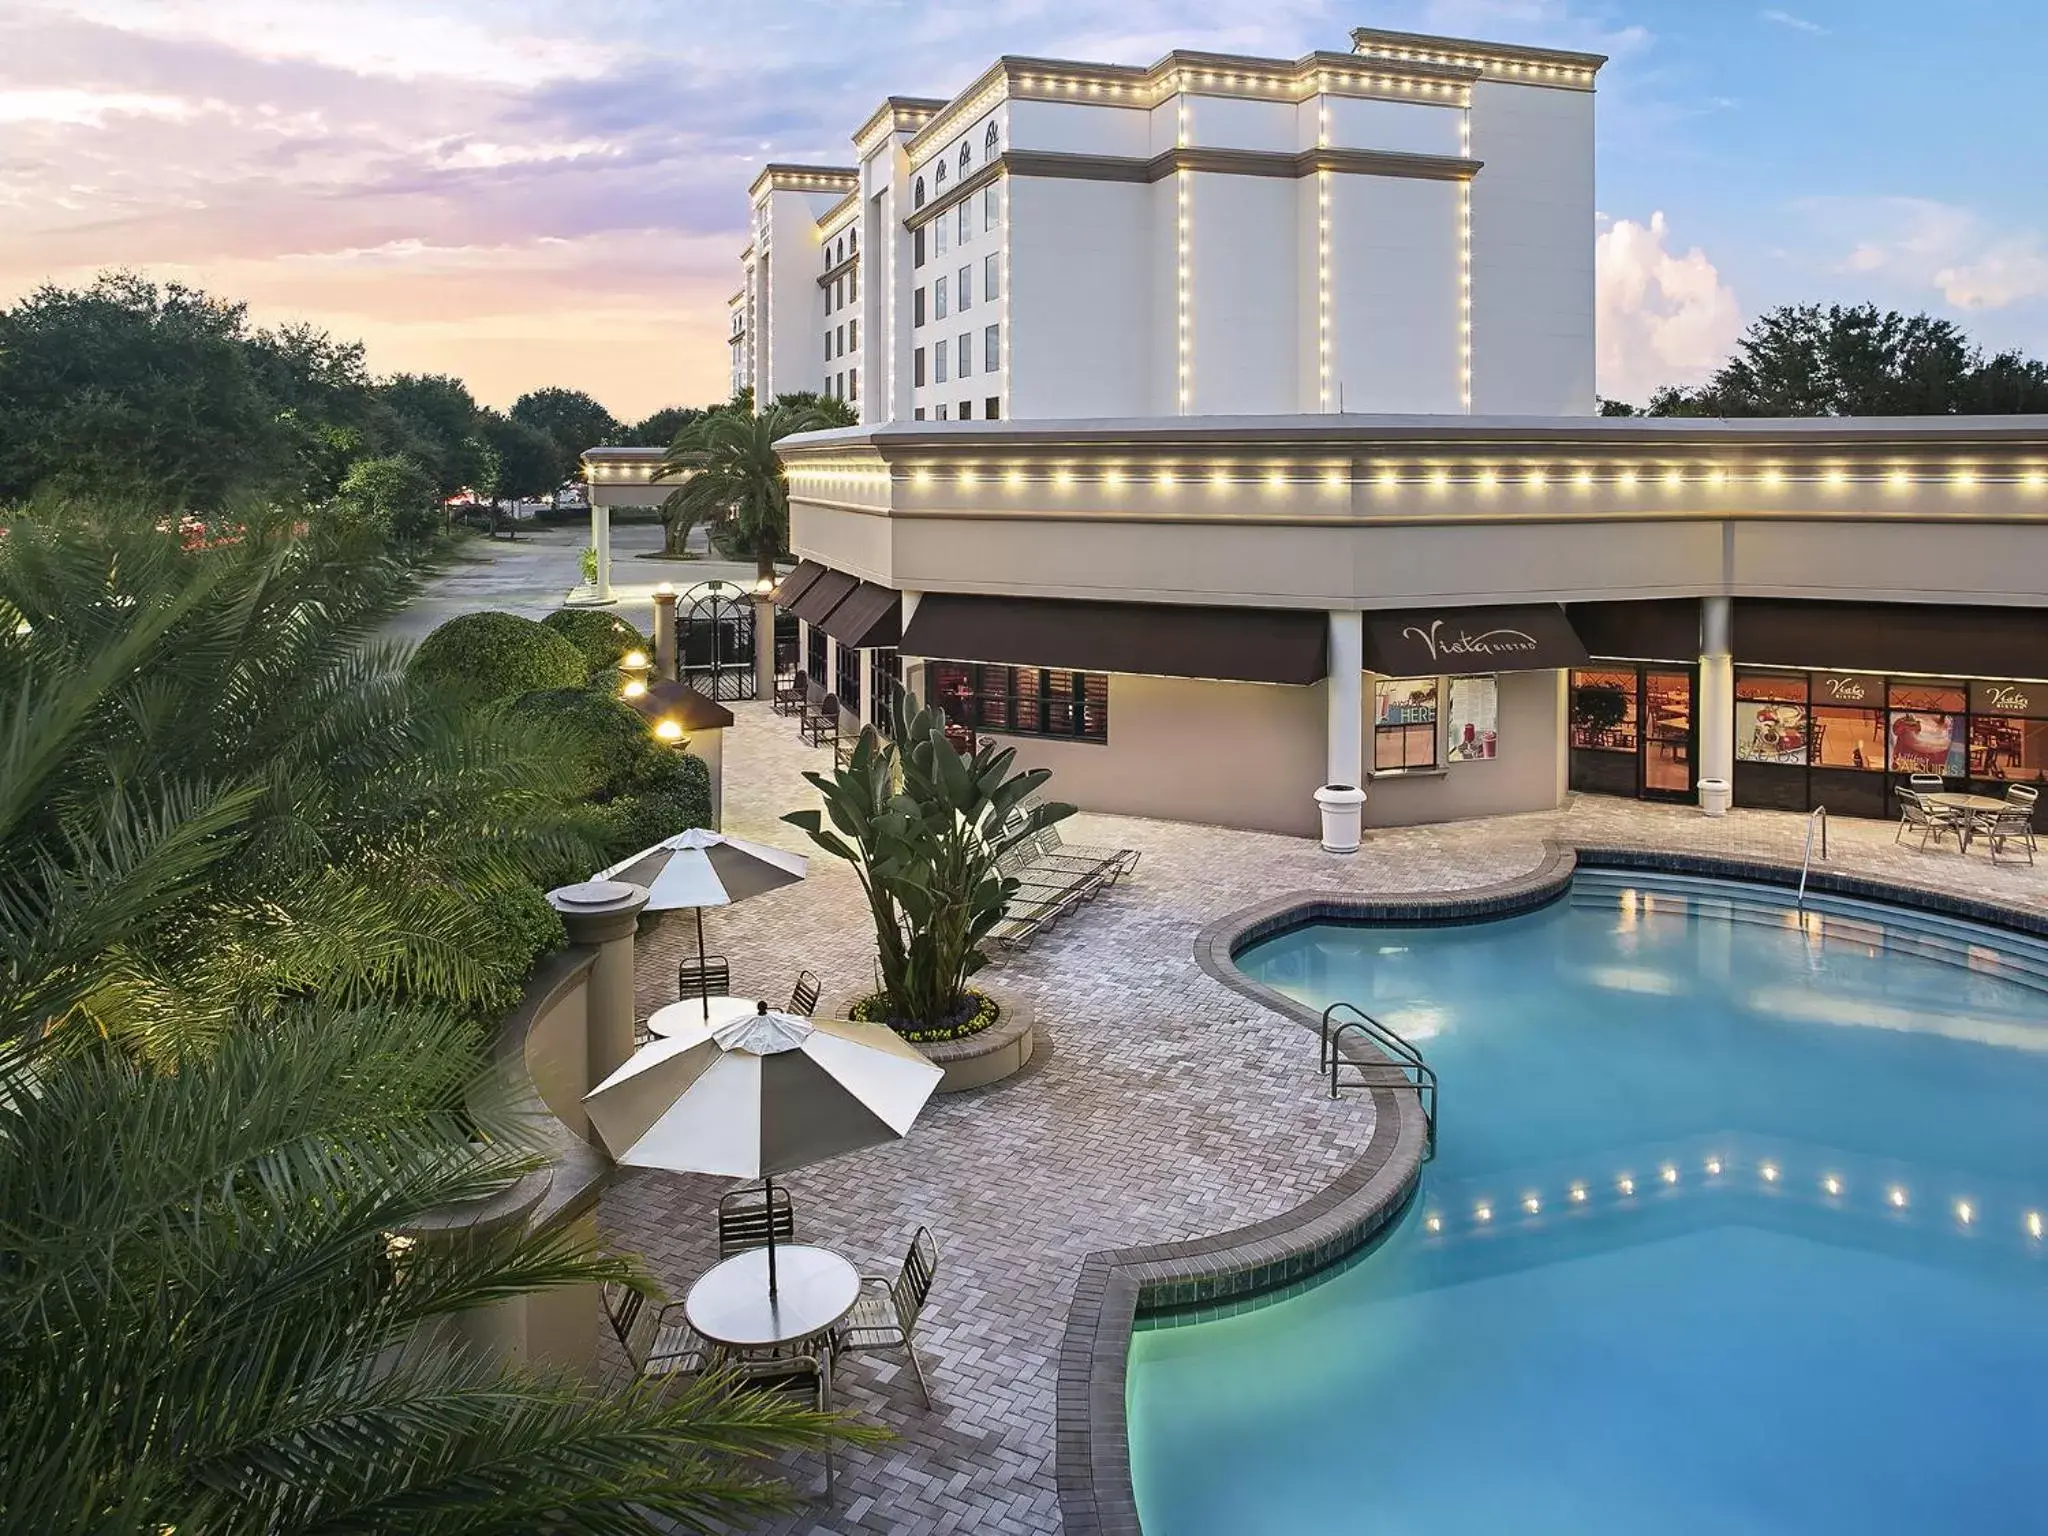 Property building, Pool View in Buena Vista Suites Orlando